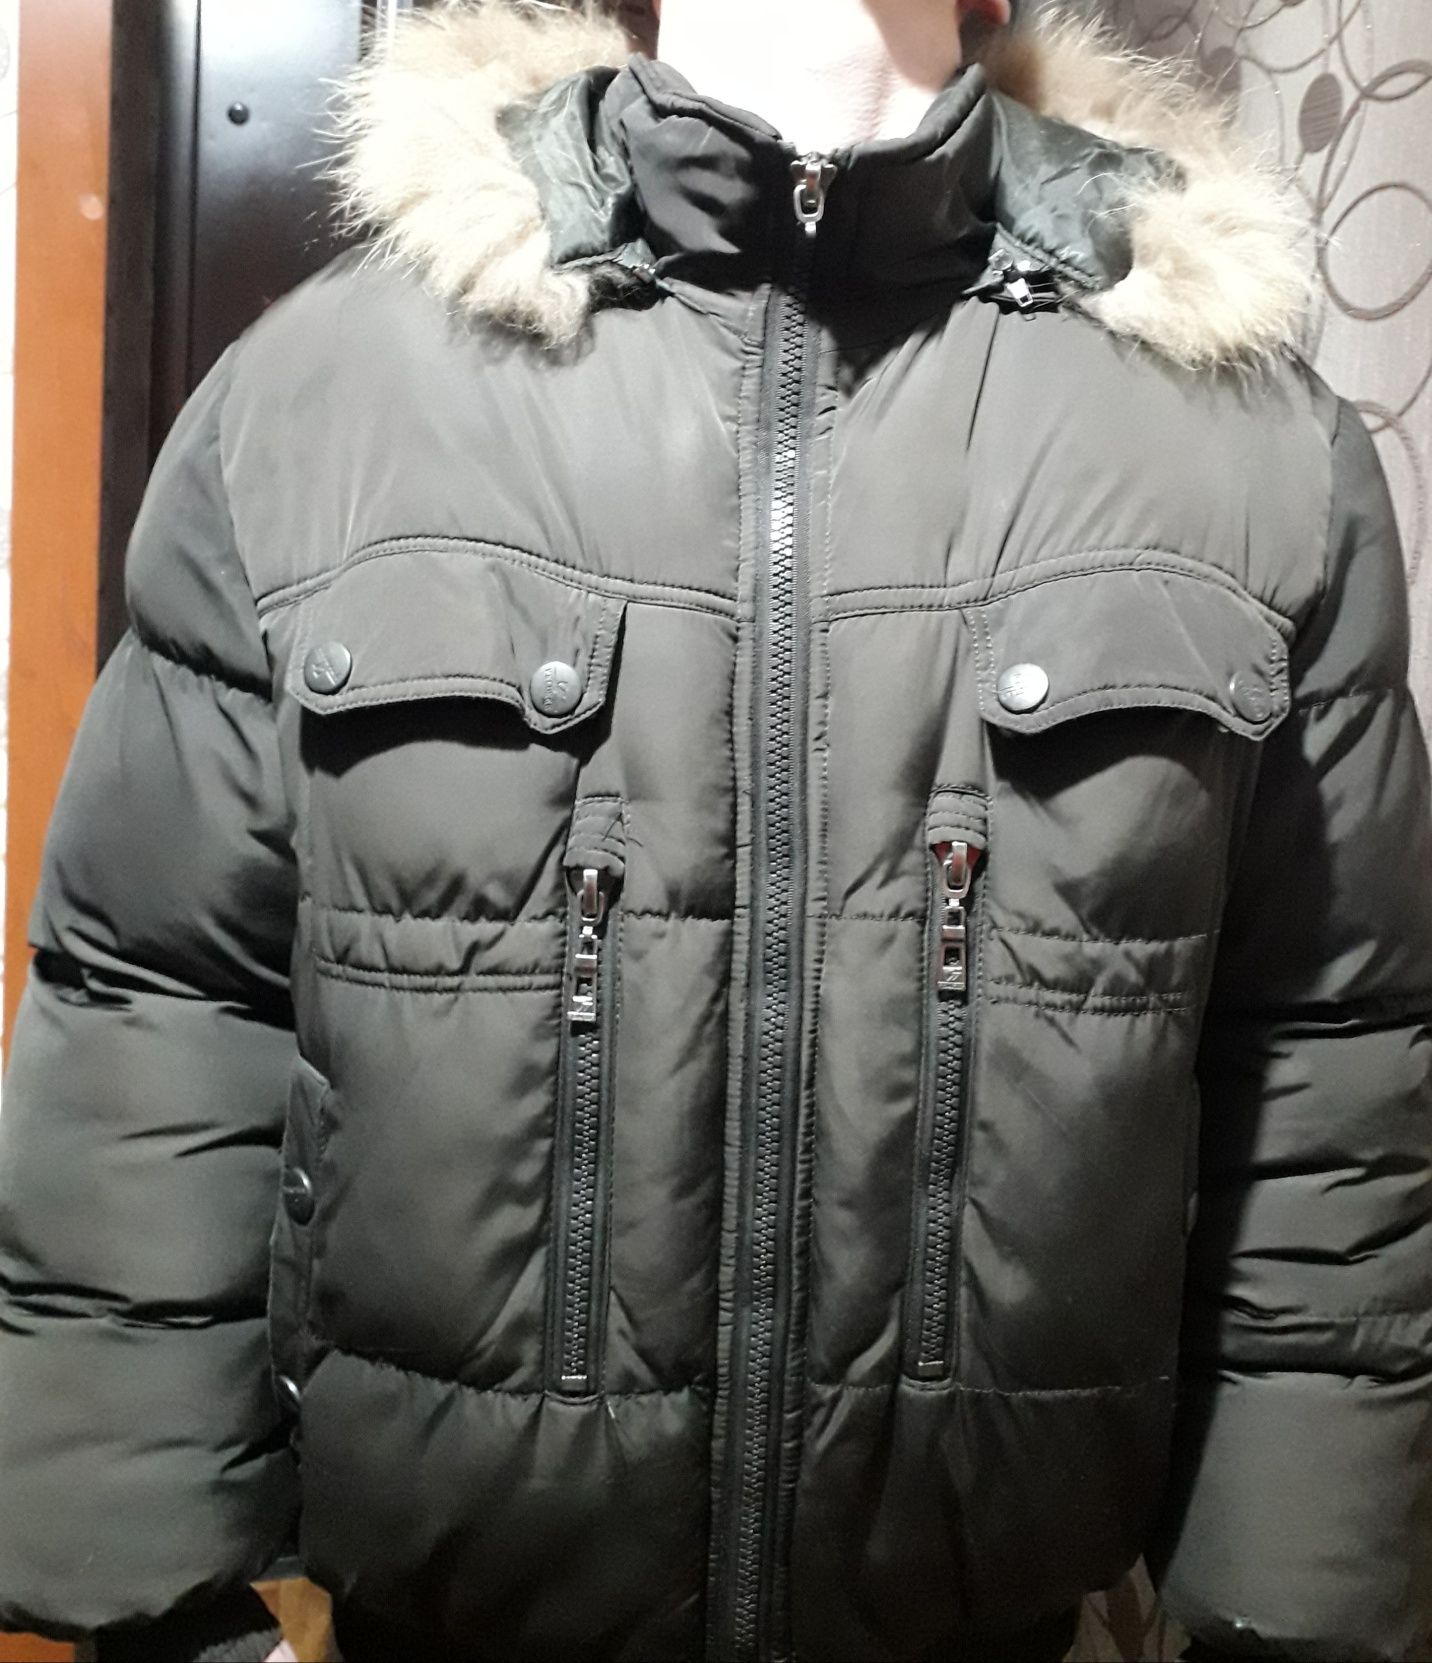 Срочно продаётся теплая куртка - пуховик48 размера в отличном состояни